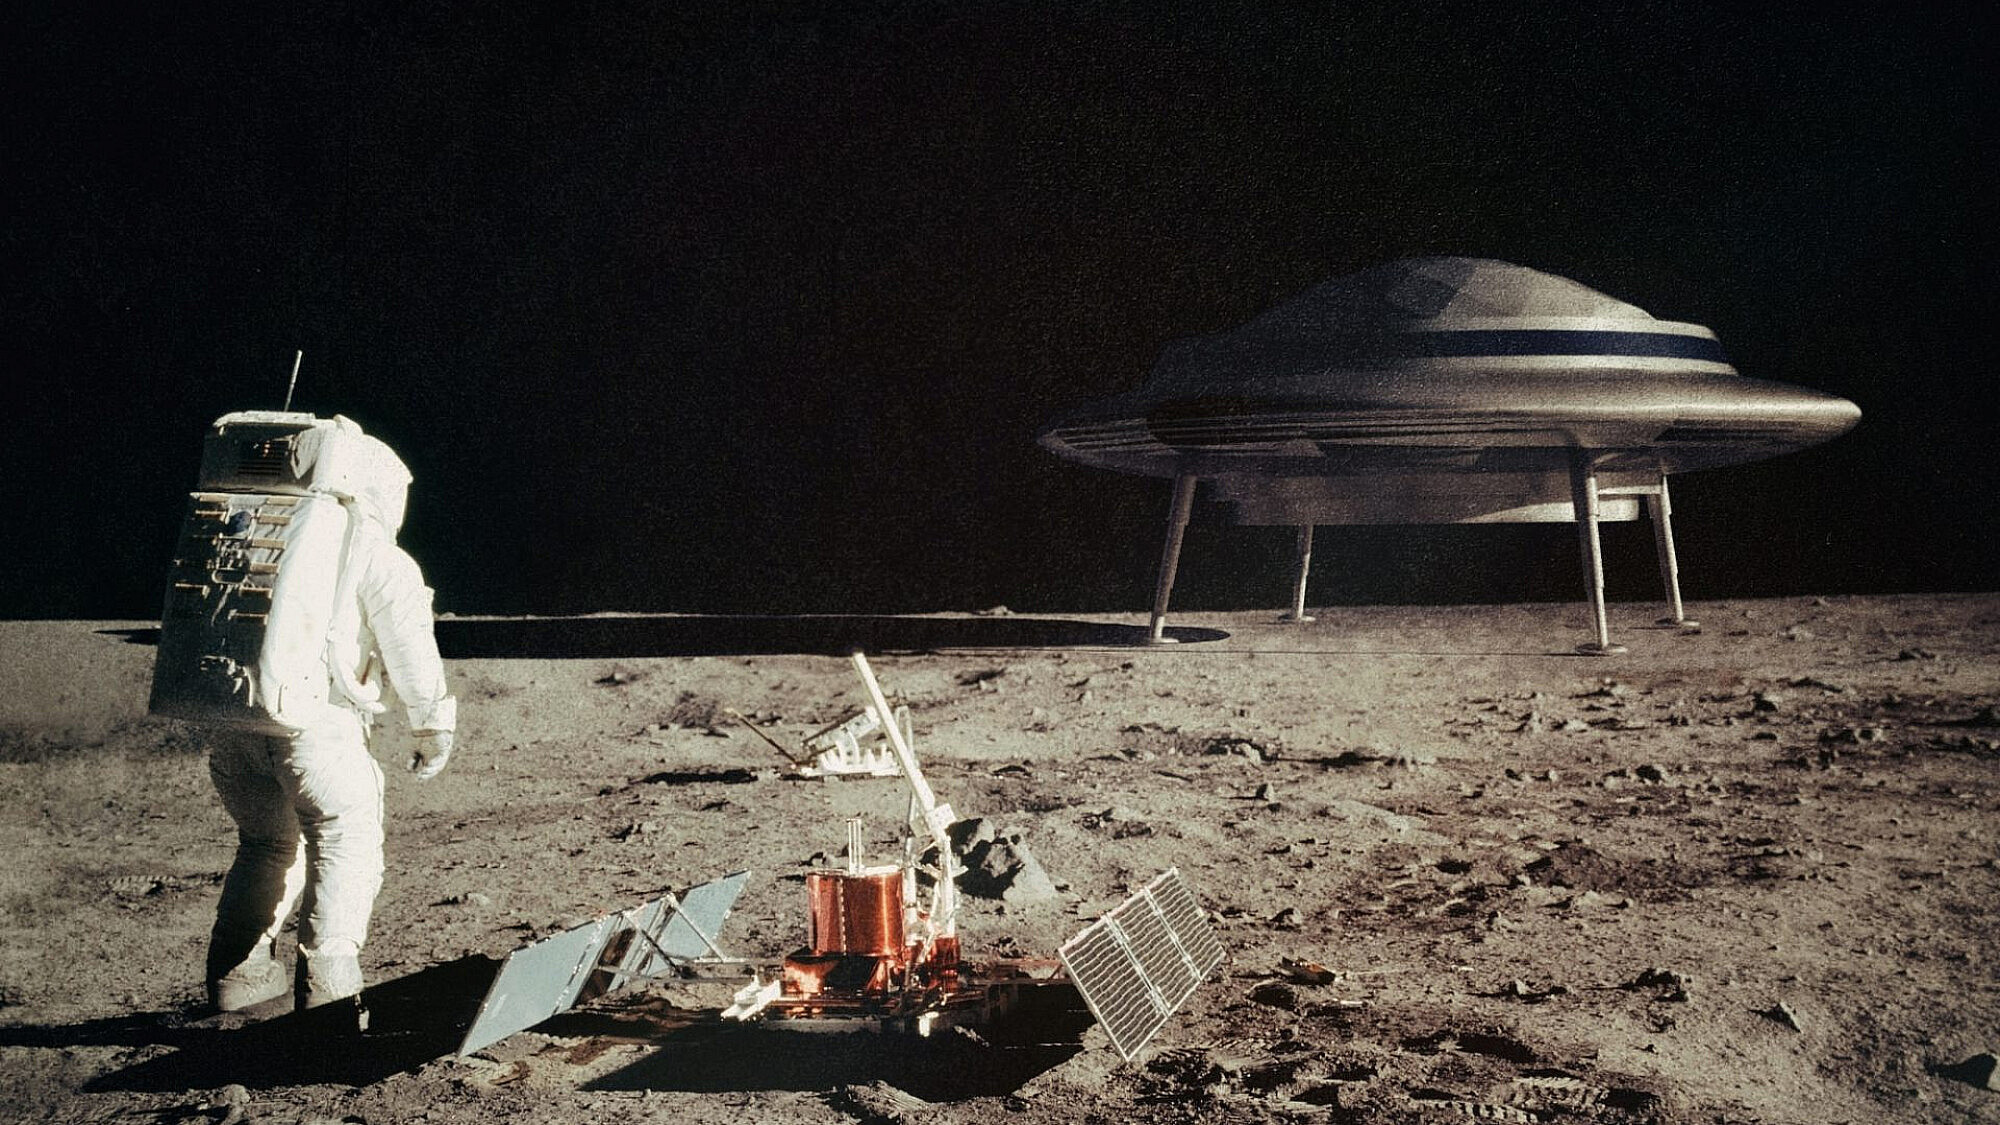 הנה ההוכחה: הדיפ סטייט מסתיר חייזרים על הירח כדי להפליל את טראמפ (צילום: שאטרסטוק)